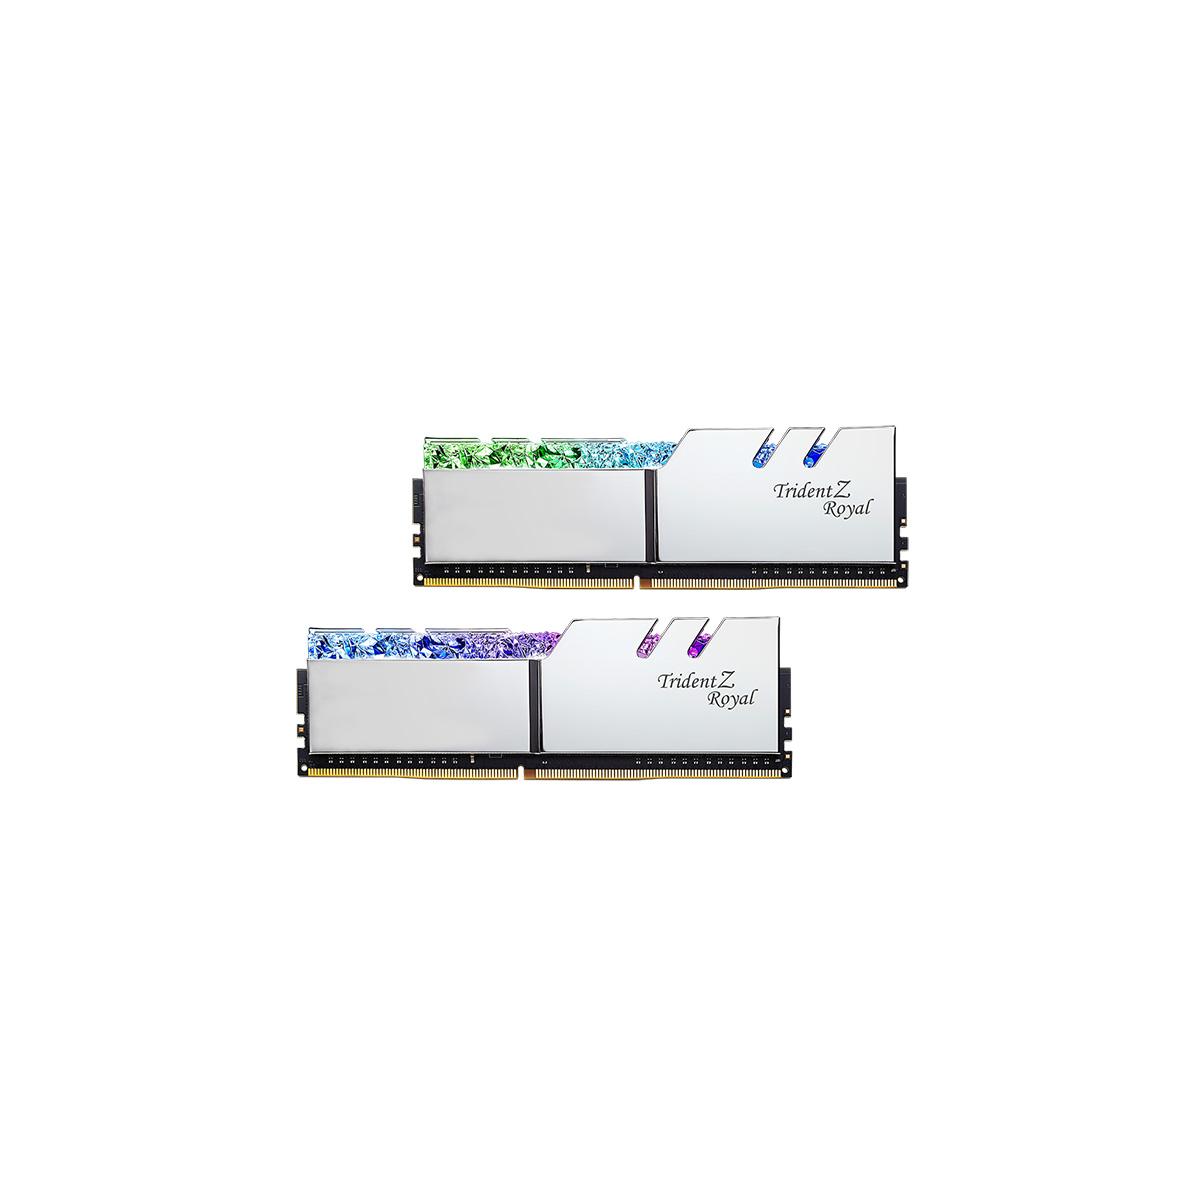 MEMORIA DIMM DDR4 G.SKILL (F4-4000C18D-64GTRS) 64GB (2X32GB) 4000 MHZ, TRIDENT ROYAL SILVER - G.SKILL